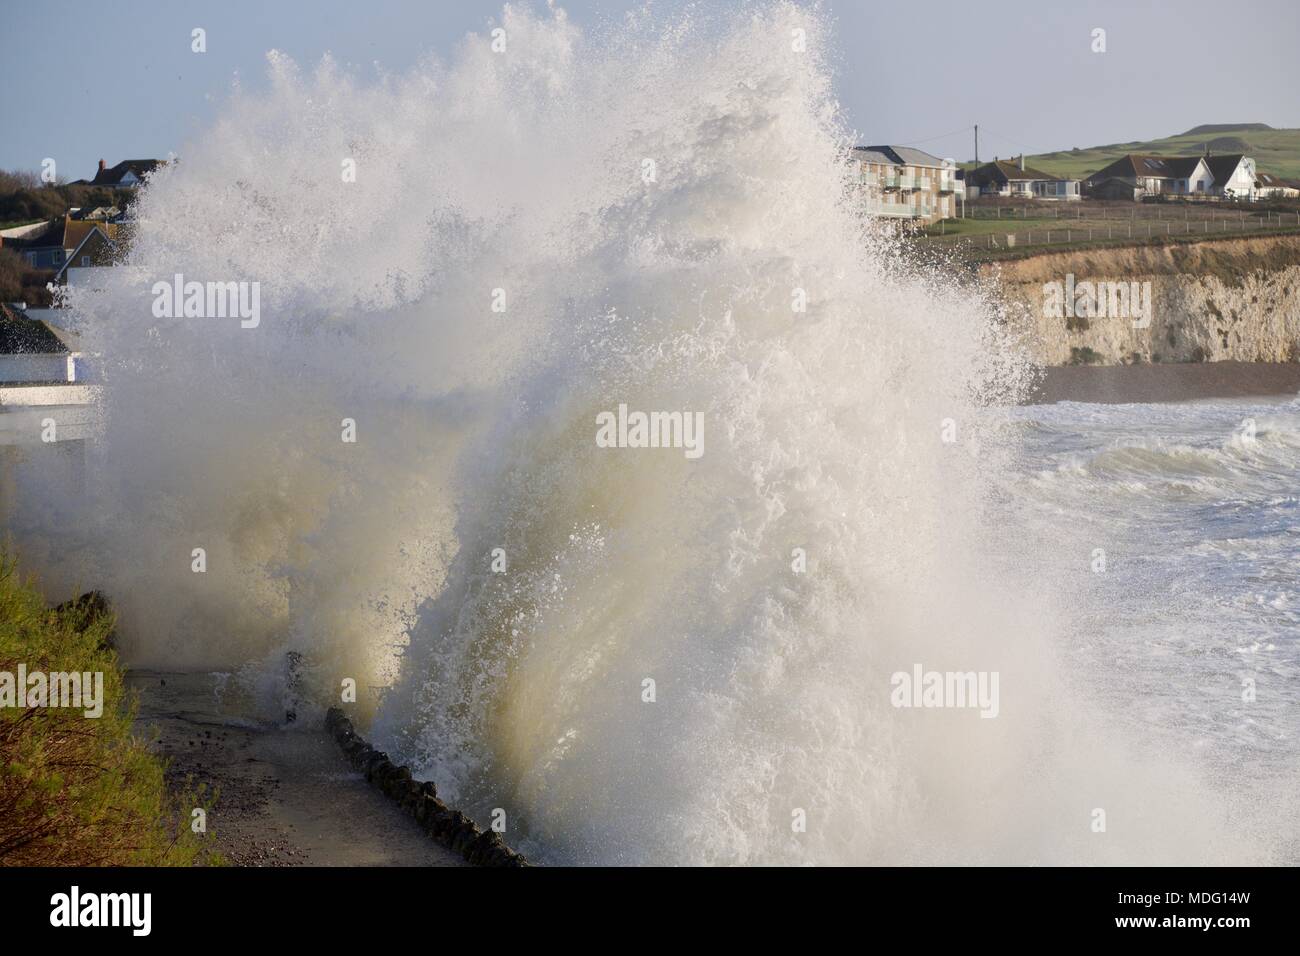 rough sea with large waves crashing onto rocks at Freshwater Bay, Isle of Wight, United Kingdom Stock Photo